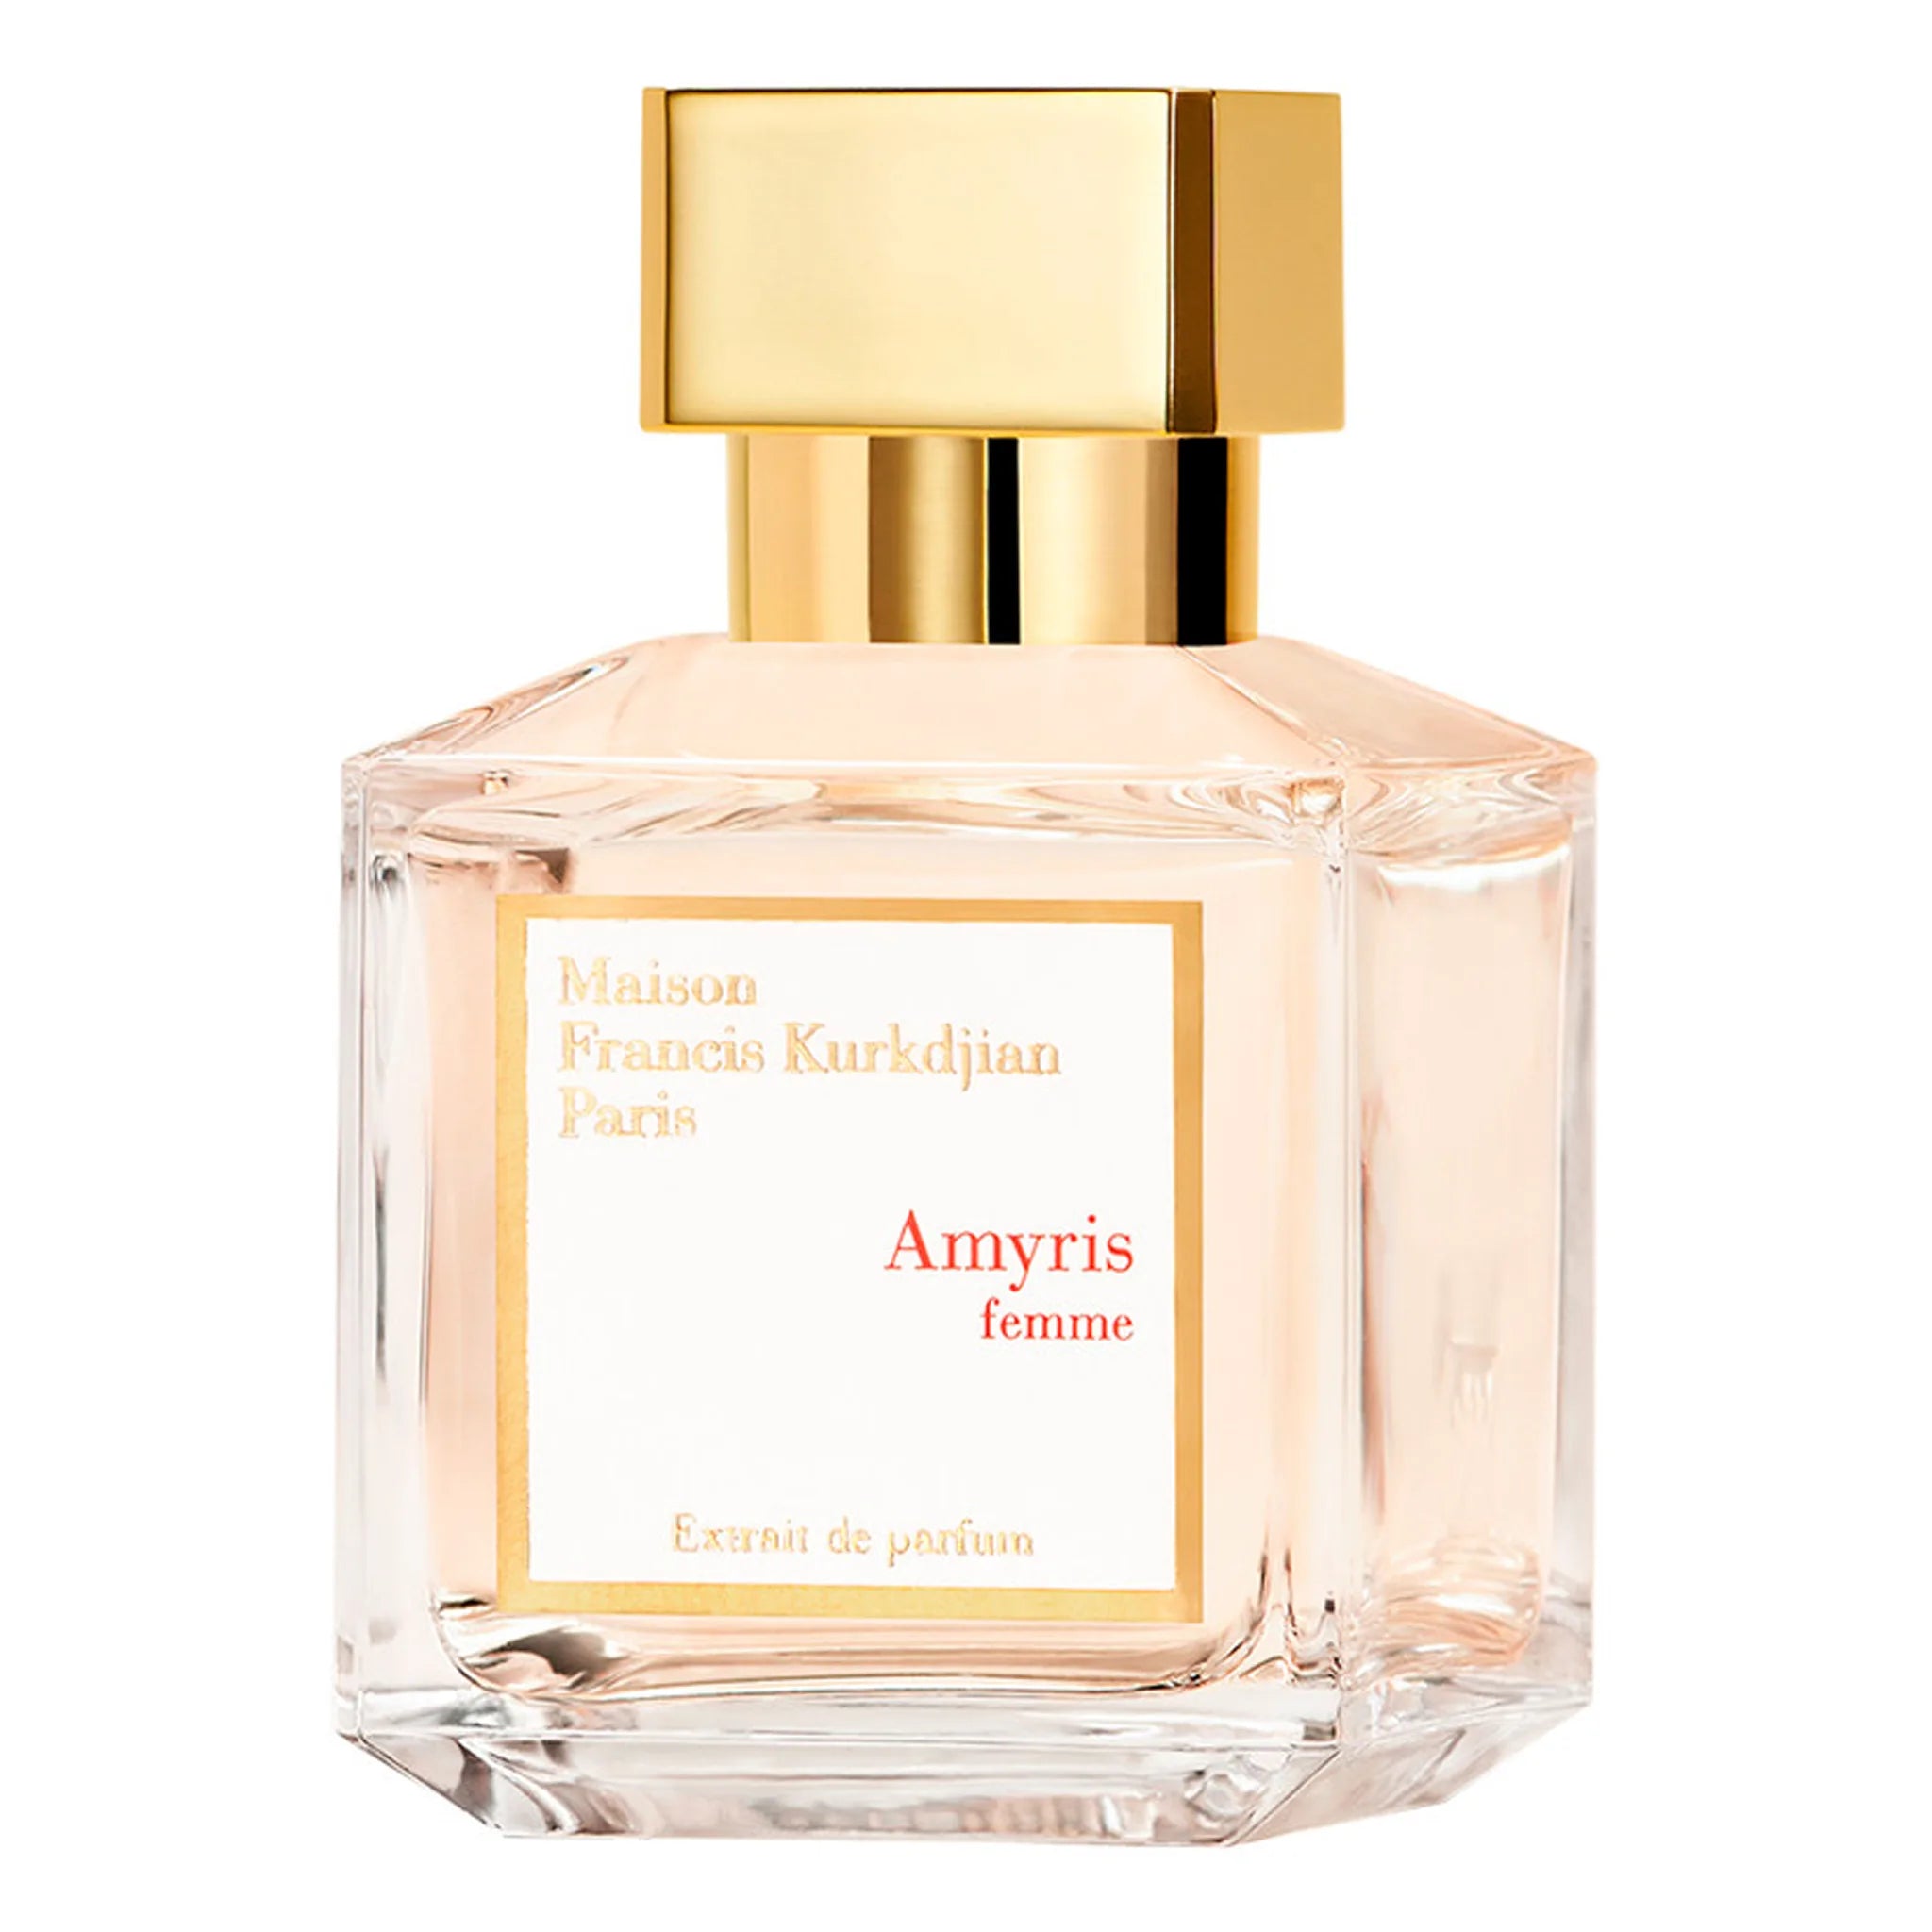 Front view of Maison Francis Kurkdjian Amyris Femme Extrait De Parfum 70ml